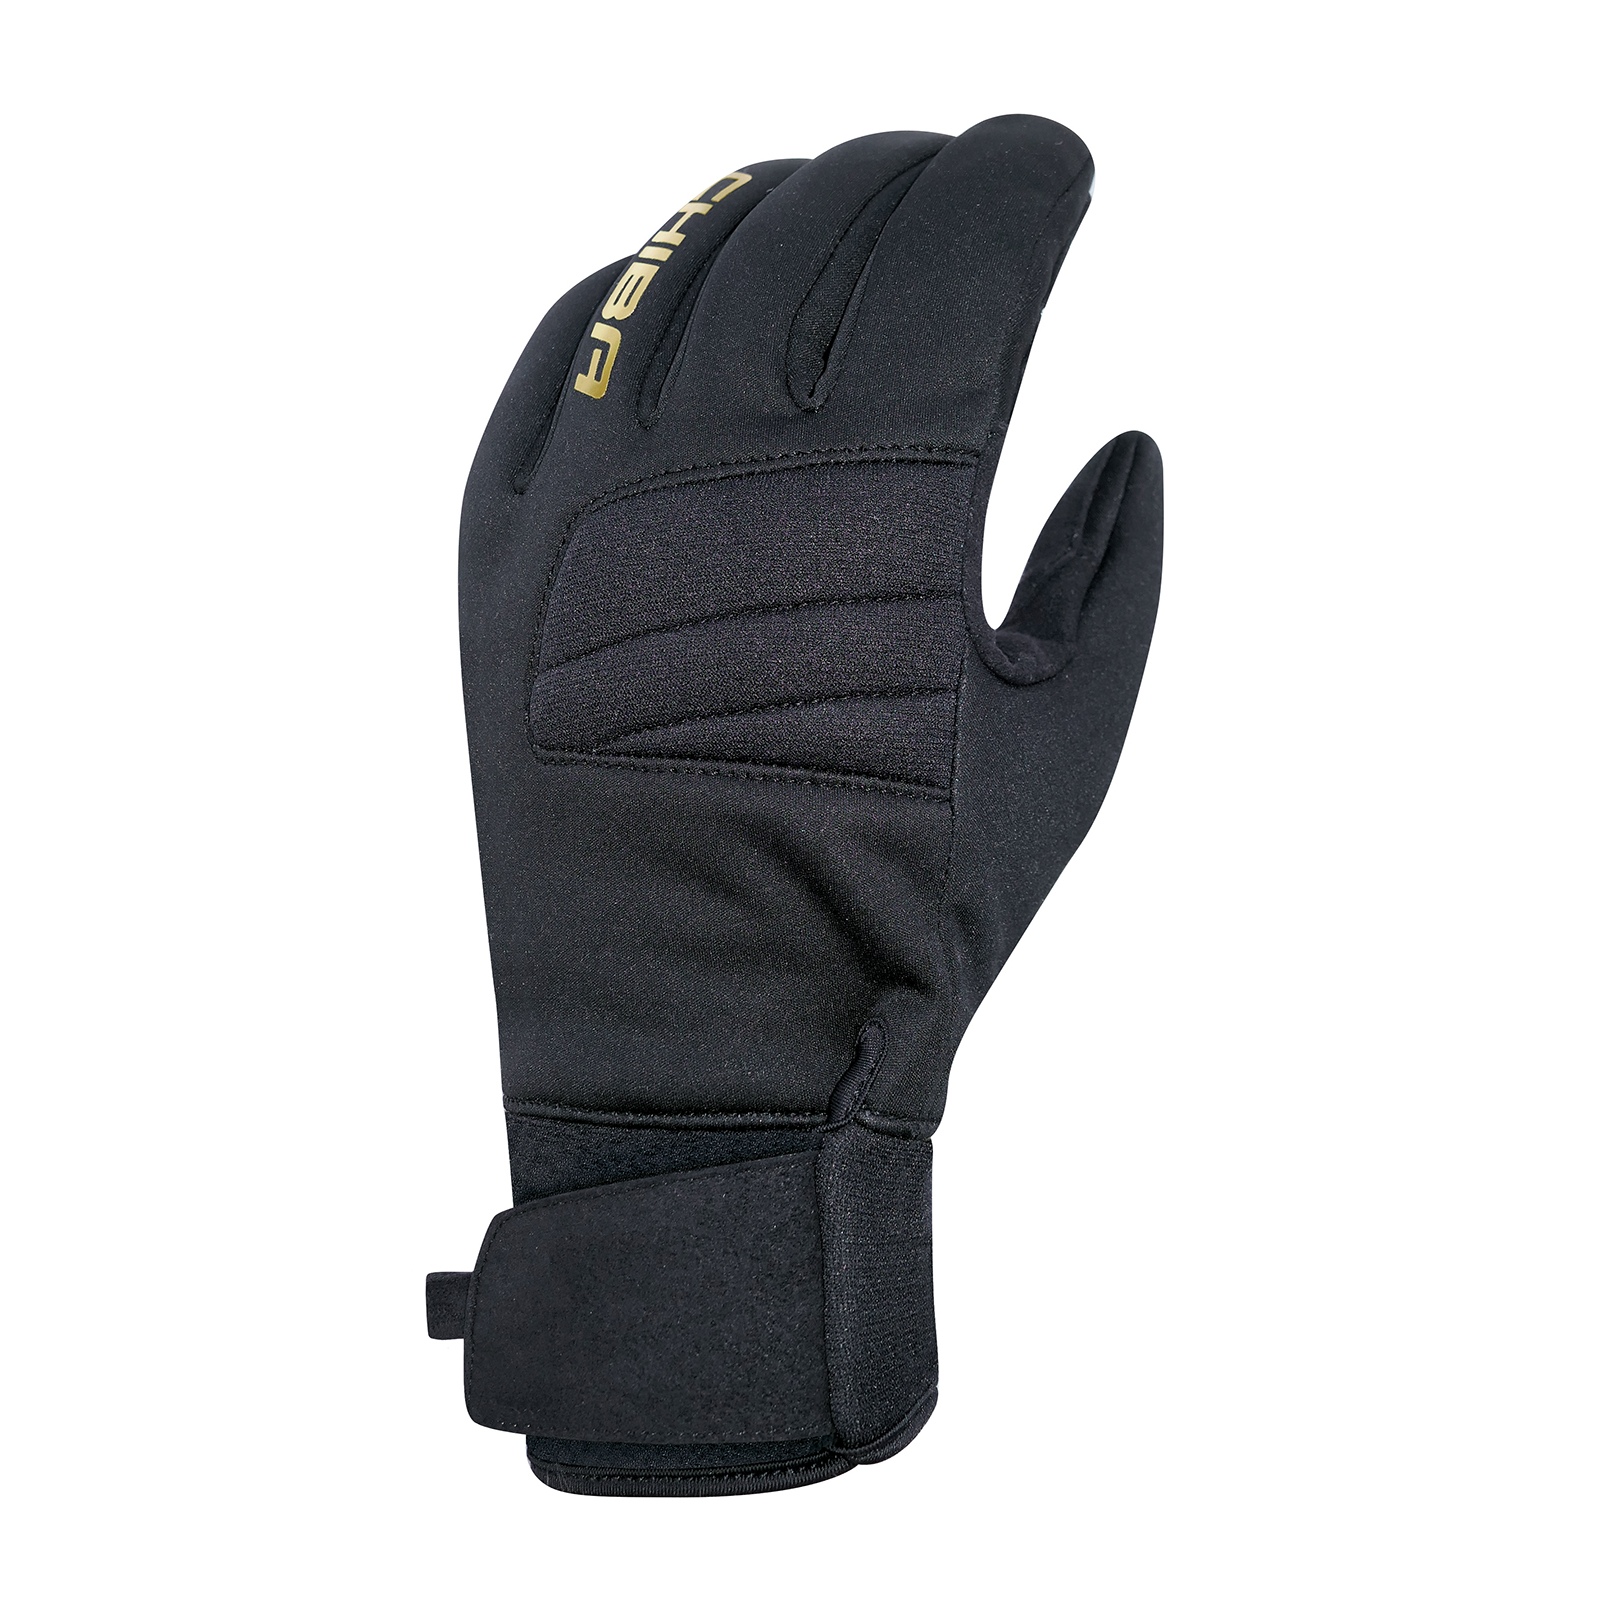 Productfoto van Chiba Classic Fietshandschoenen - zwart/goud